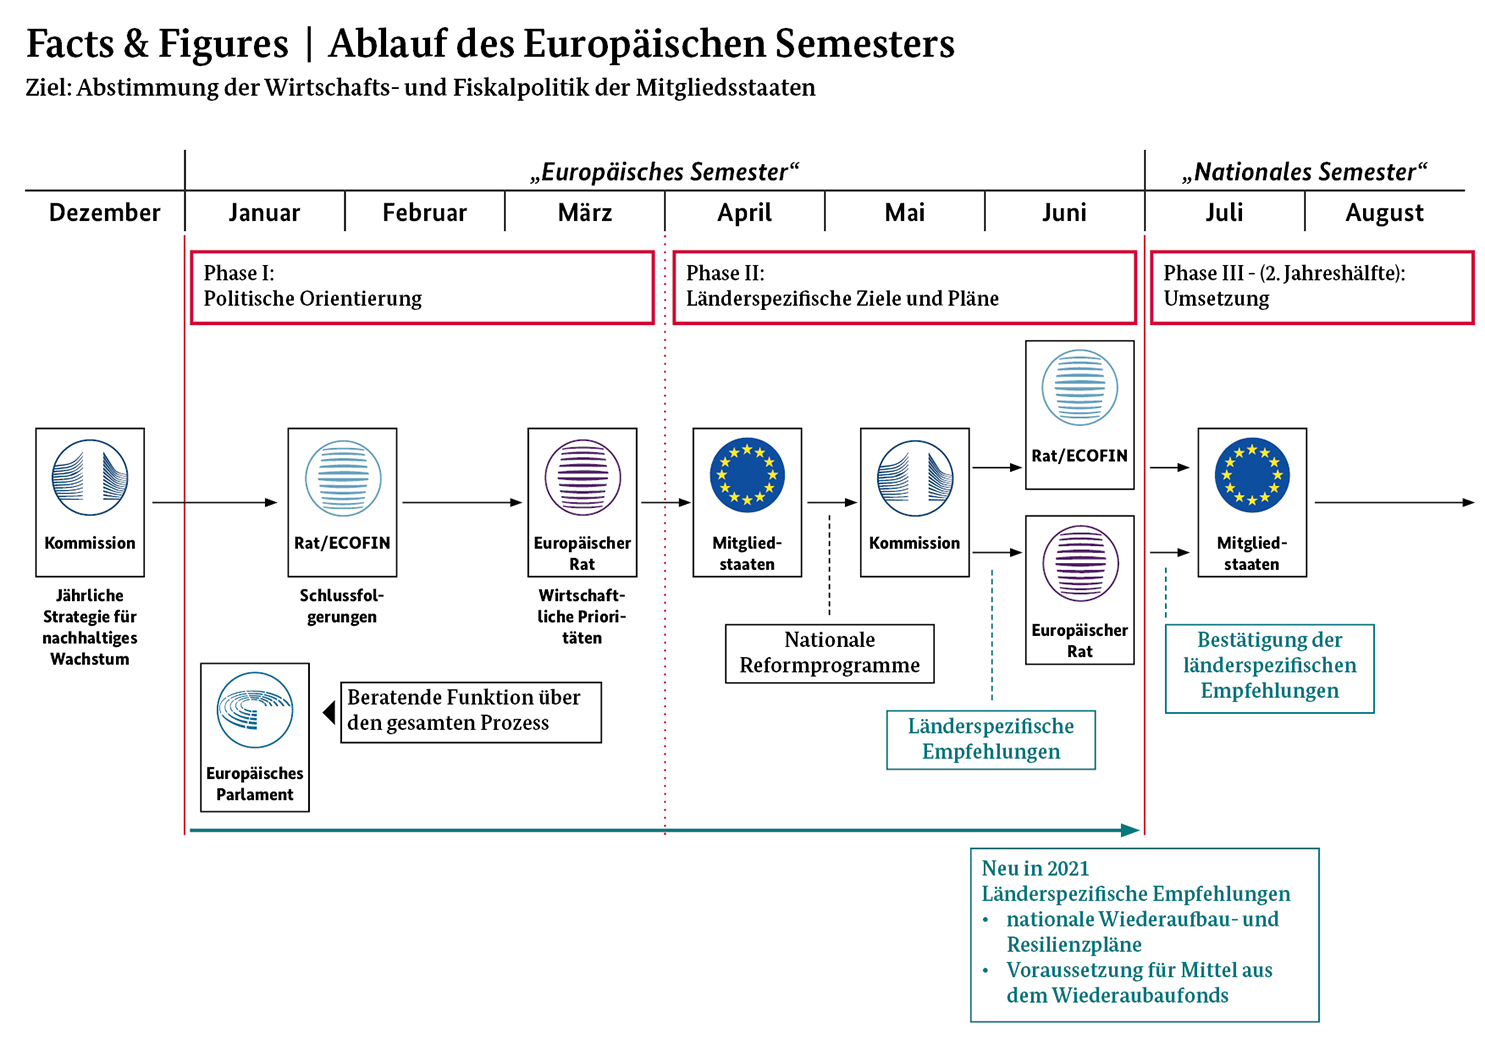 Die Grafik zeigt eine schematische Darstellung des Ablaufs des Europäischen Semesters, wie oberhalb beschrieben.